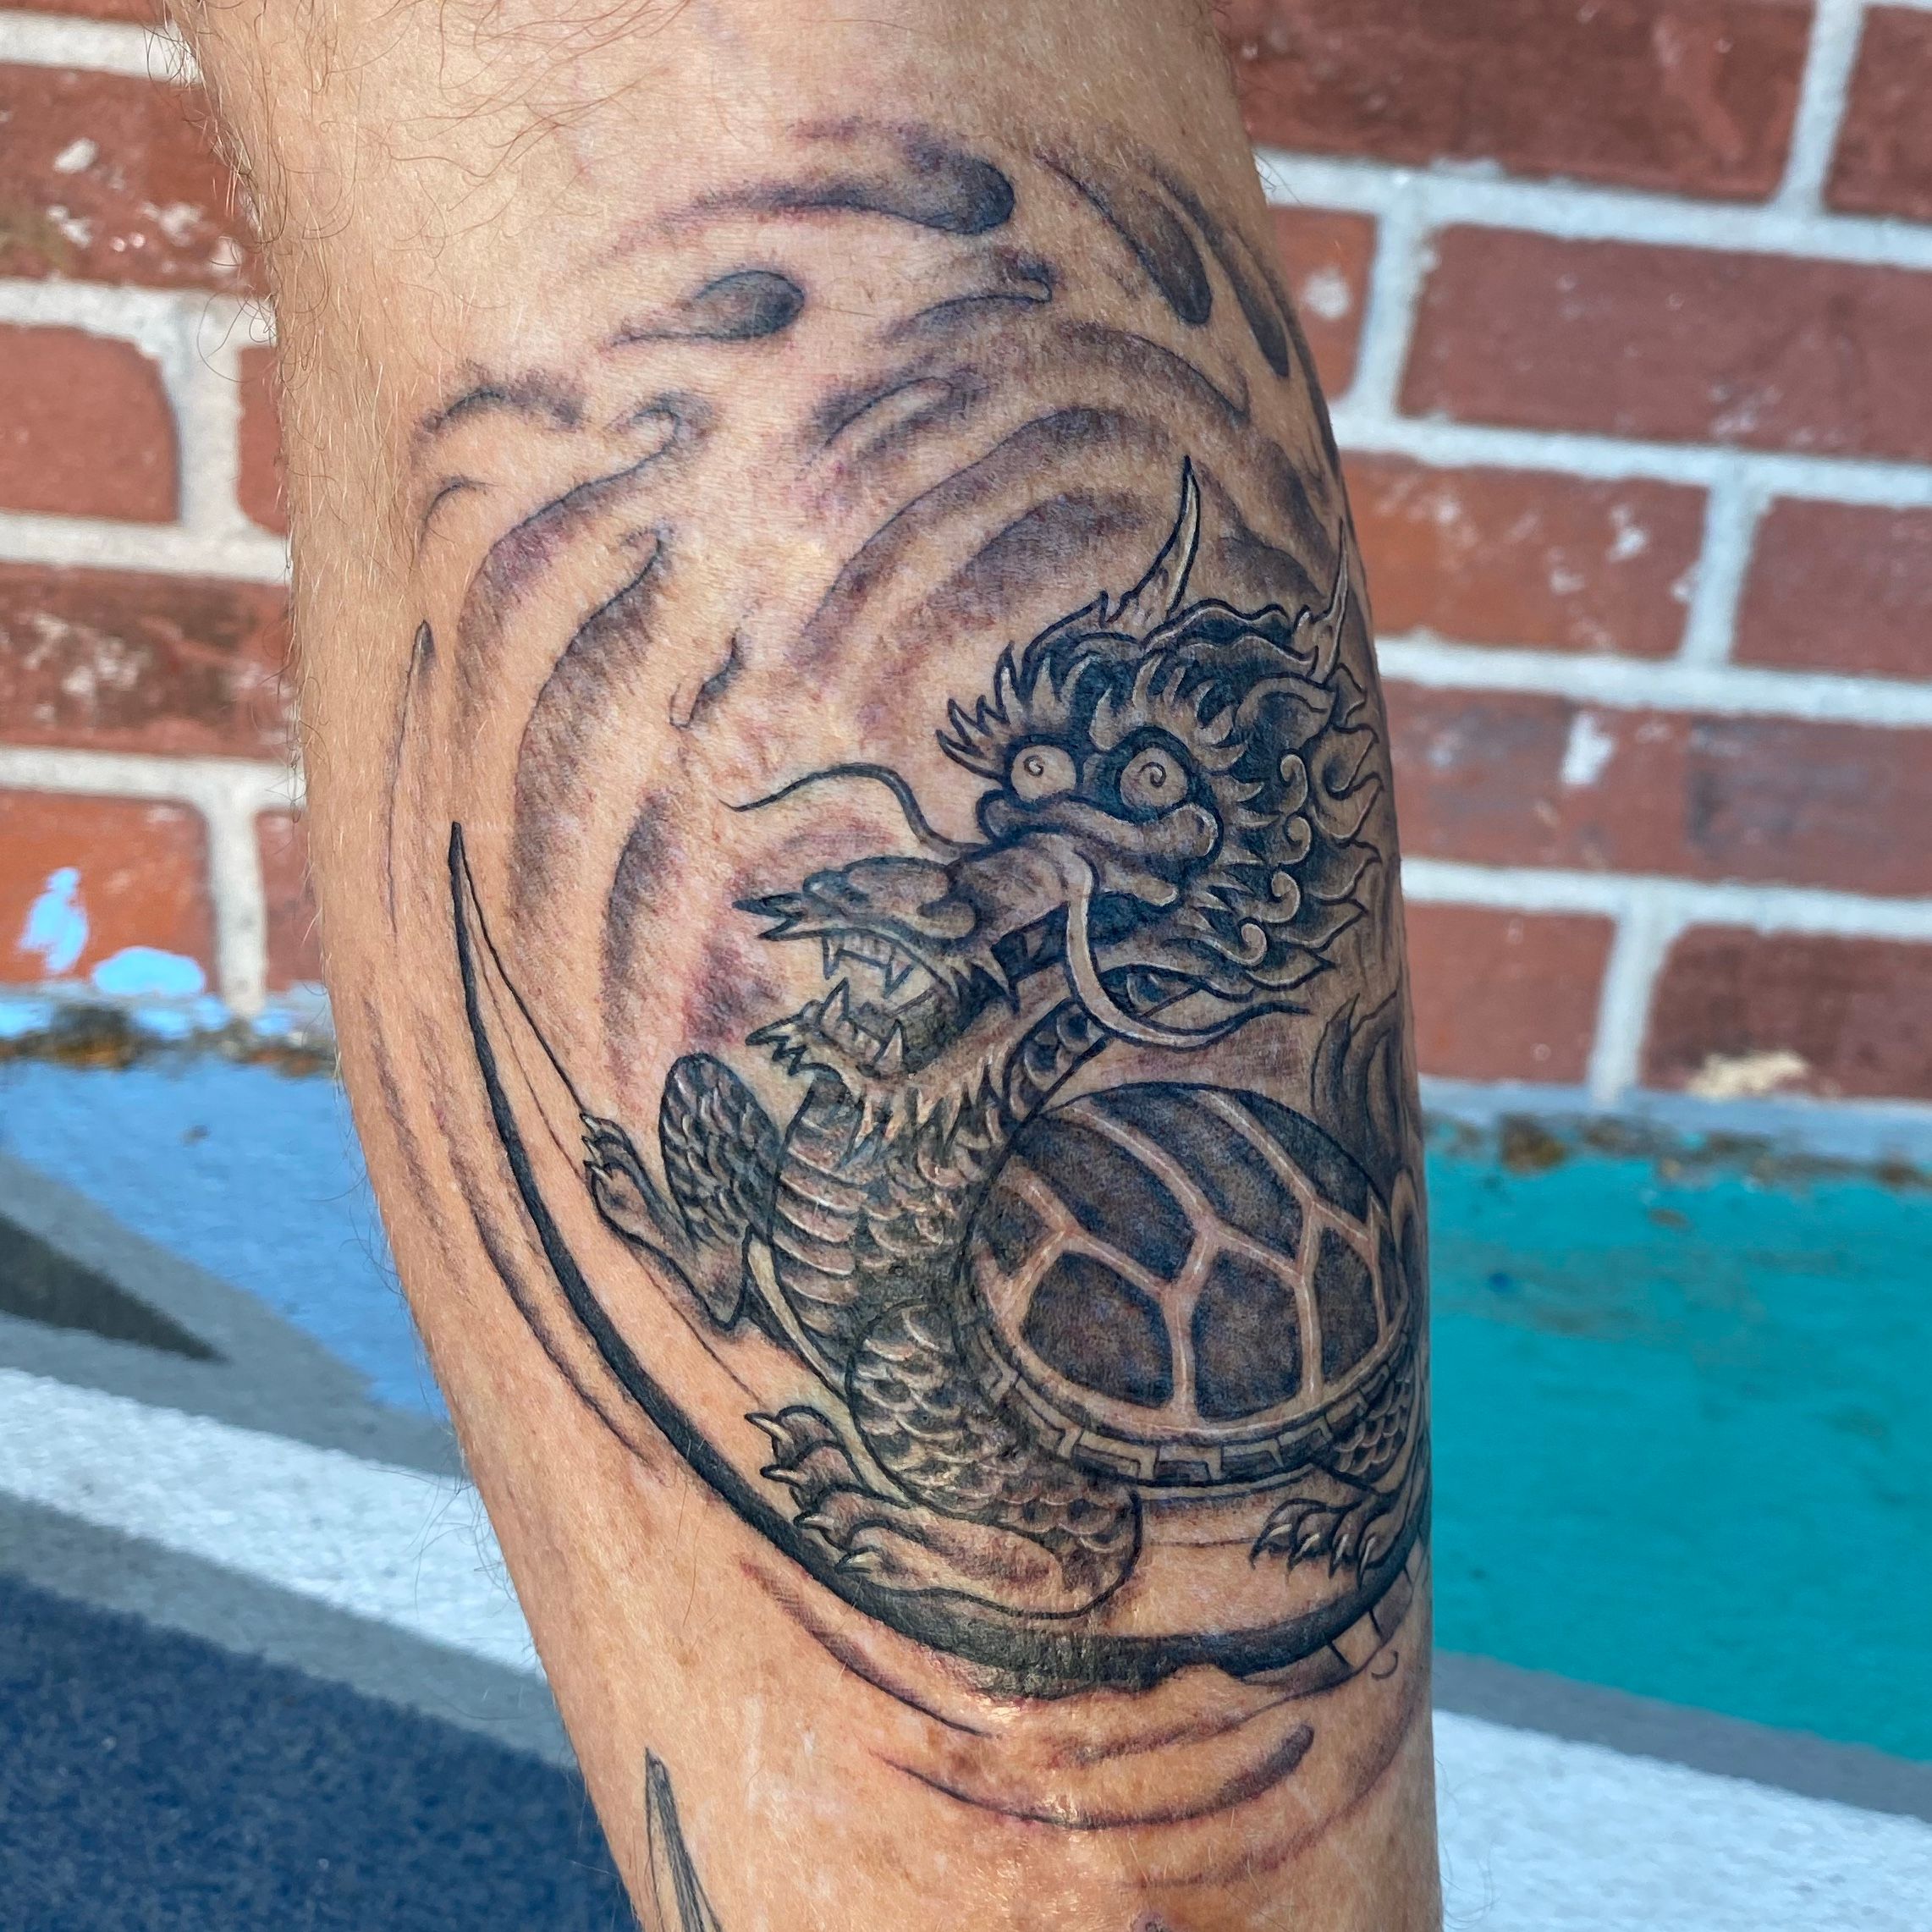 Dragon turtle and chrysanthemum      tattoo tattoos tat ink  inked envywear tatto  Turtle tattoo designs Japanese tattoo art  Japanese dragon tattoos